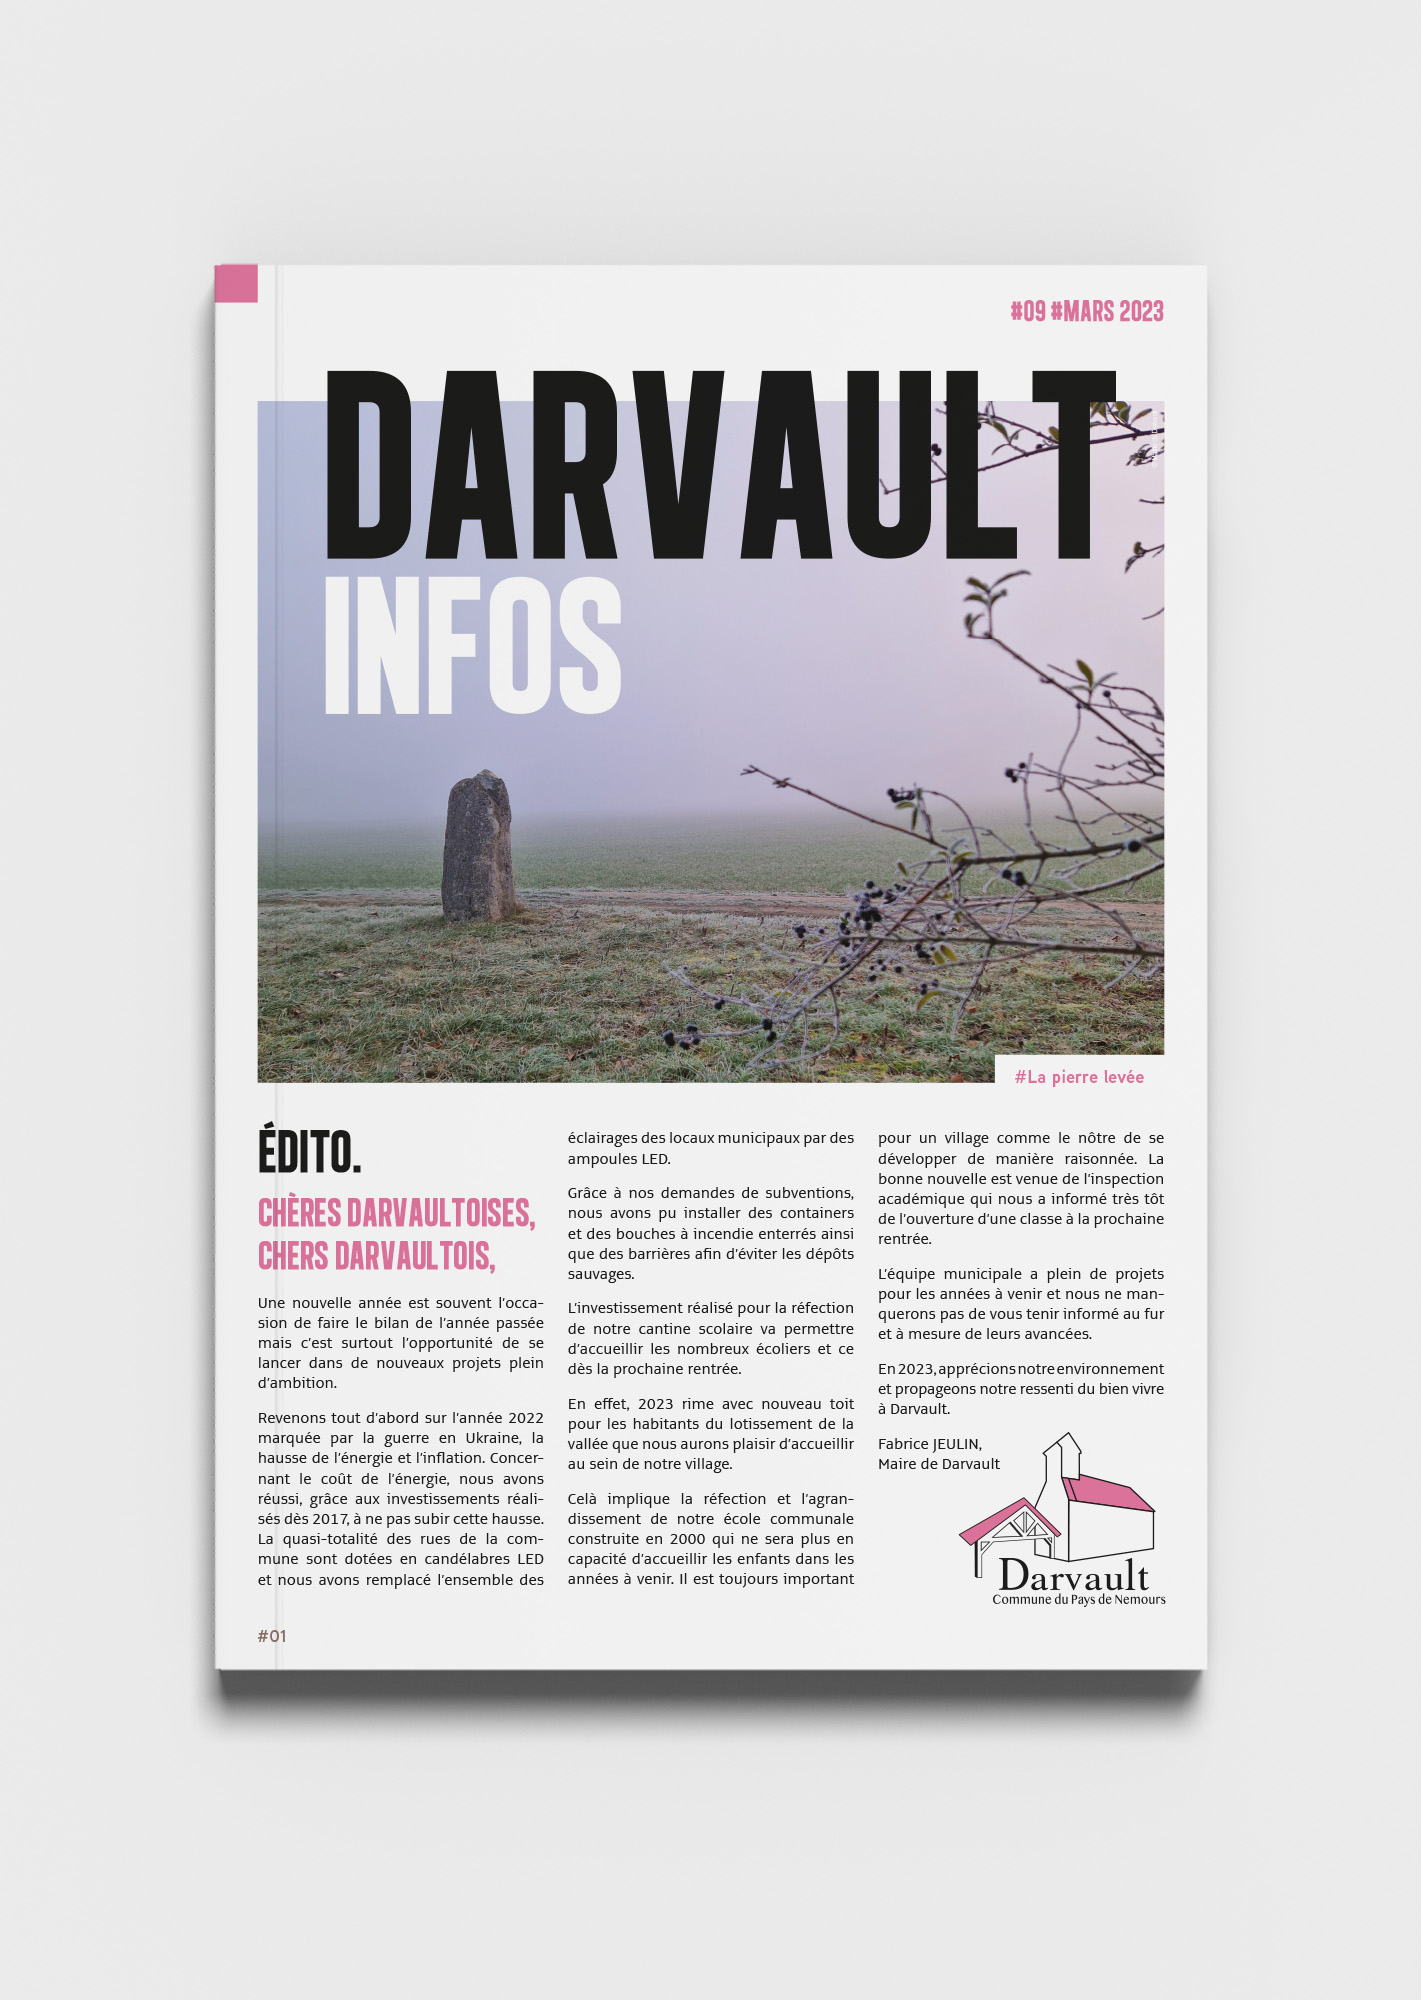 Mairie de Darvault, Couverture du journal communal de mars 2023